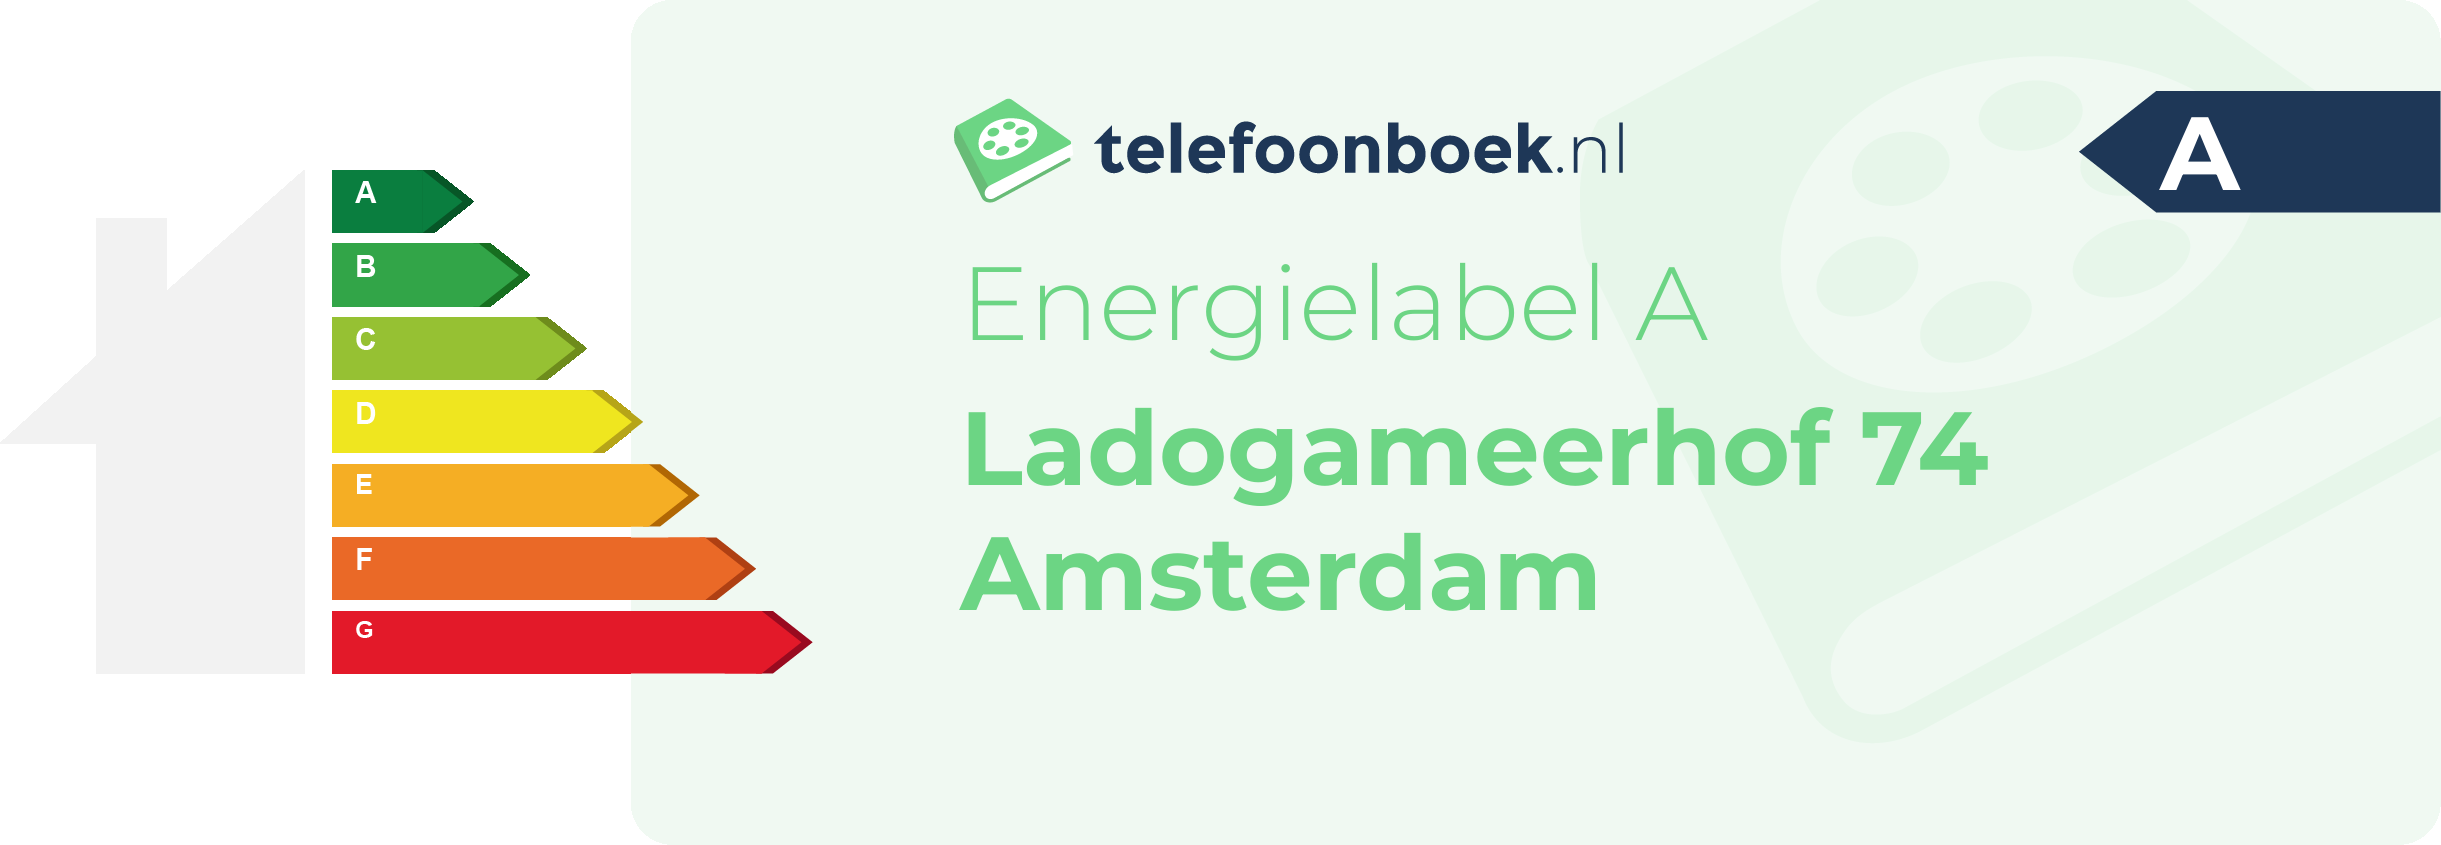 Energielabel Ladogameerhof 74 Amsterdam